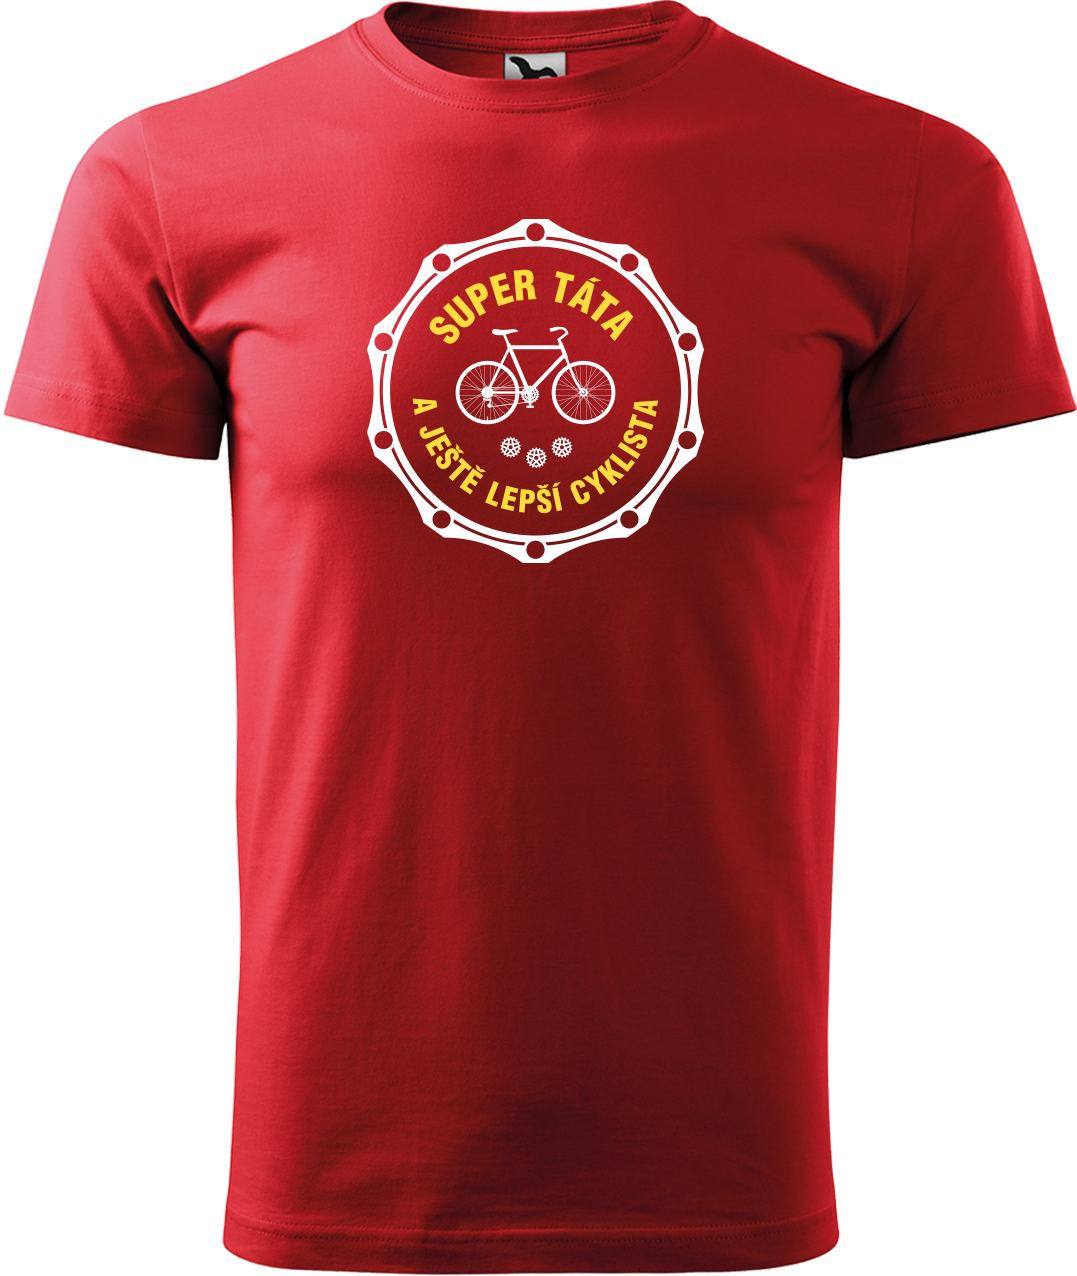 Pánské tričko pro cyklistu - Super táta a ještě lepší cyklista Velikost: L, Barva: Červená (07)